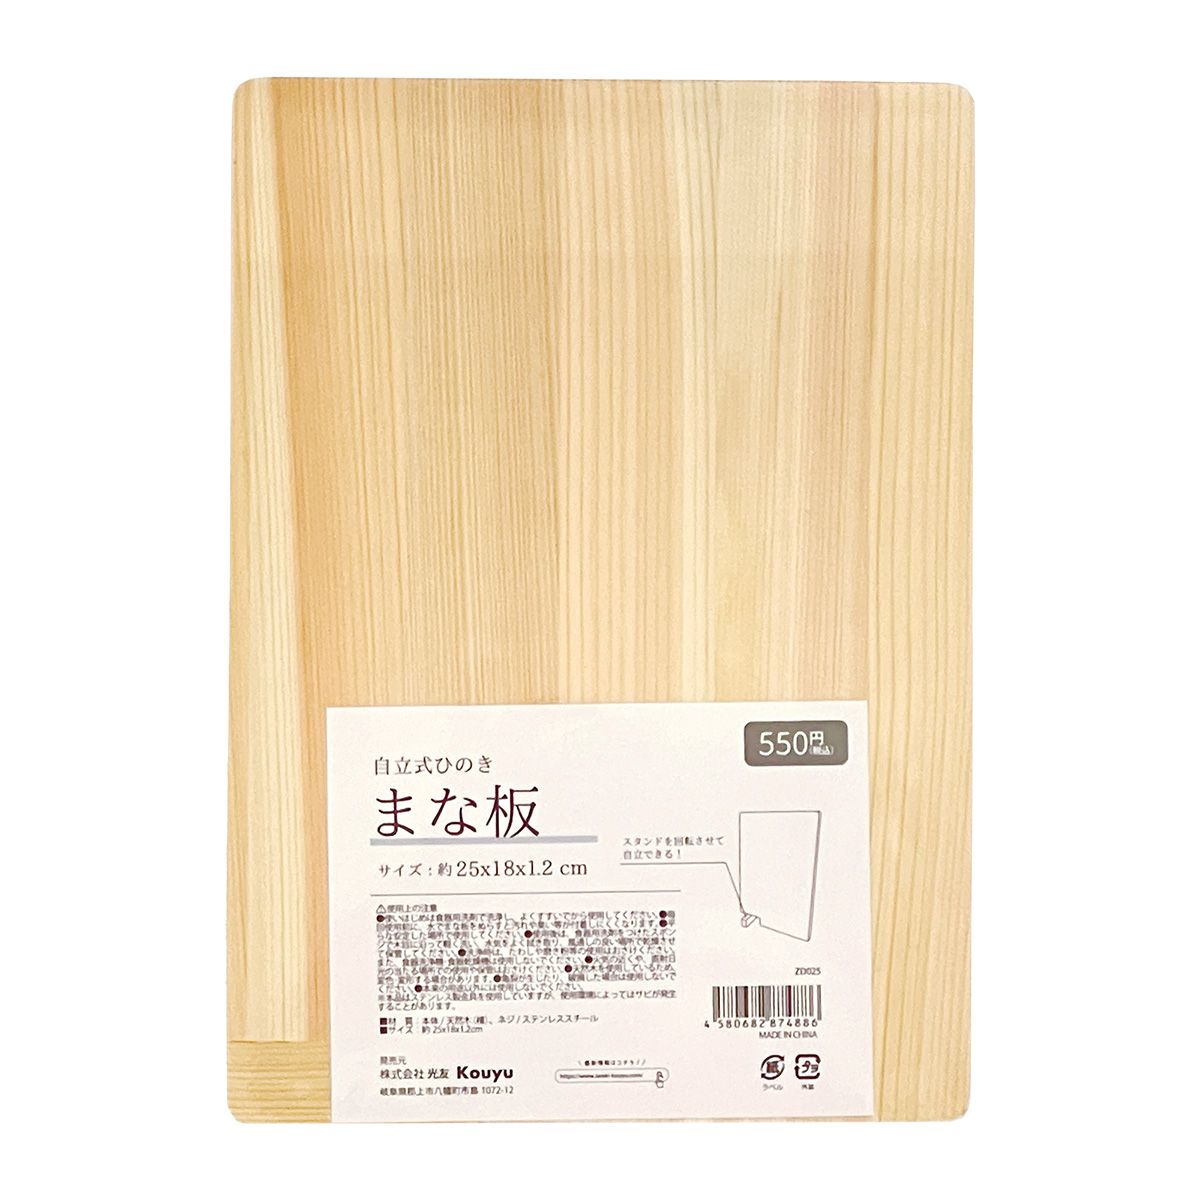 俎板 ヒノキ 天然木製 自立式まな板 約25x18x1.2cm 1523/349183